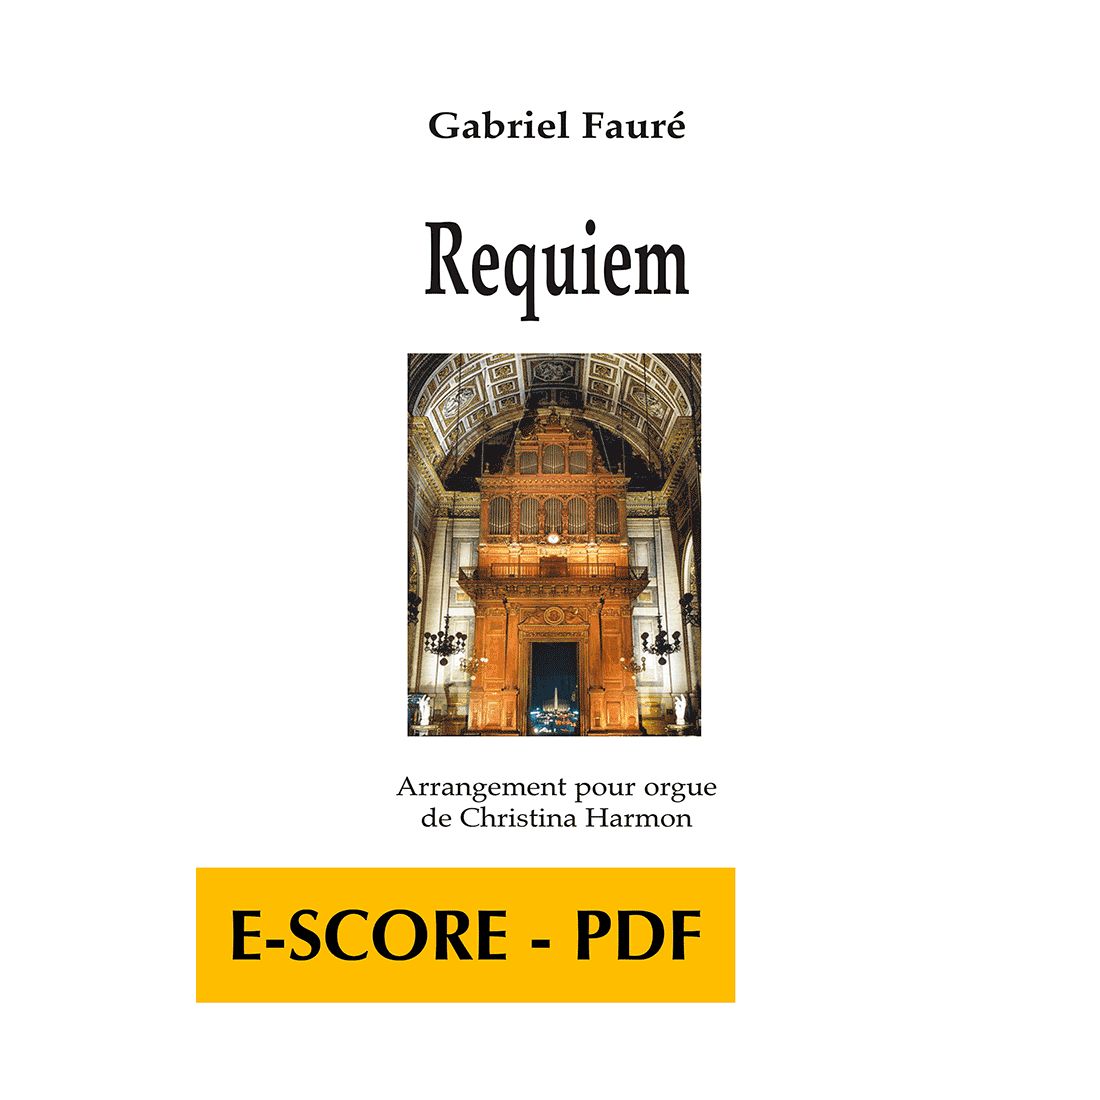 Requiem - Arrangement pour orgue - E-score PDF